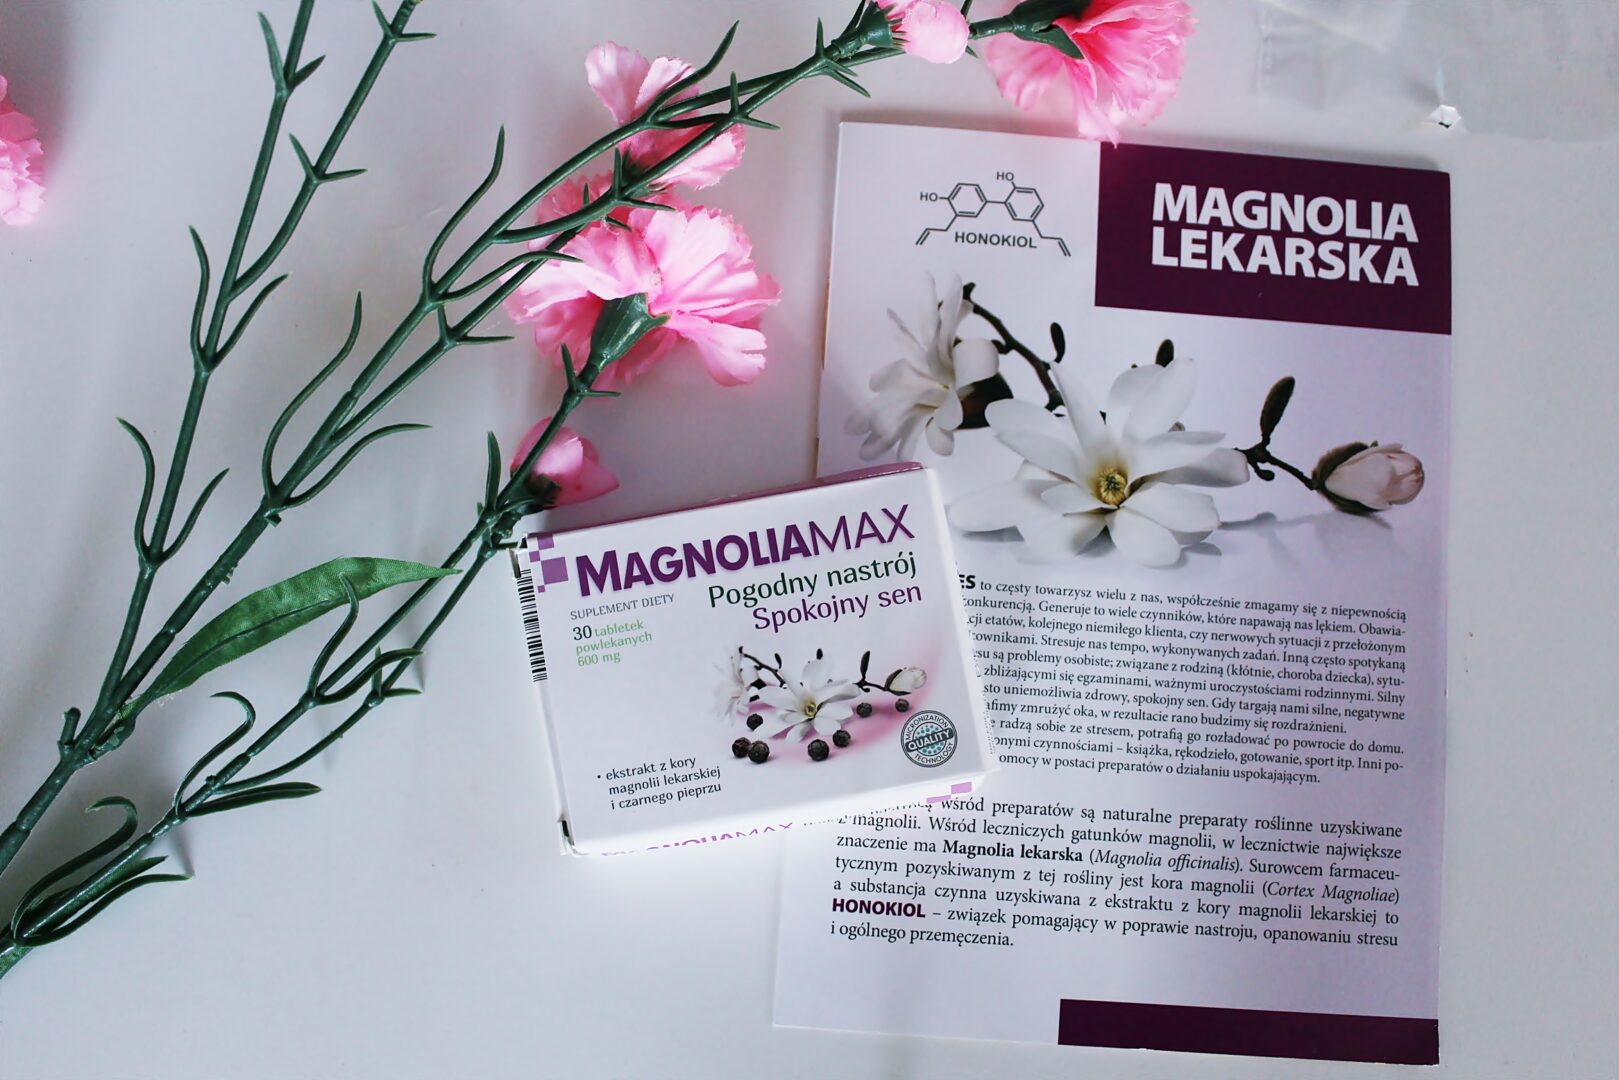 Magnoliamax recenzja – Opinie, Ulotka, Cena, Skład